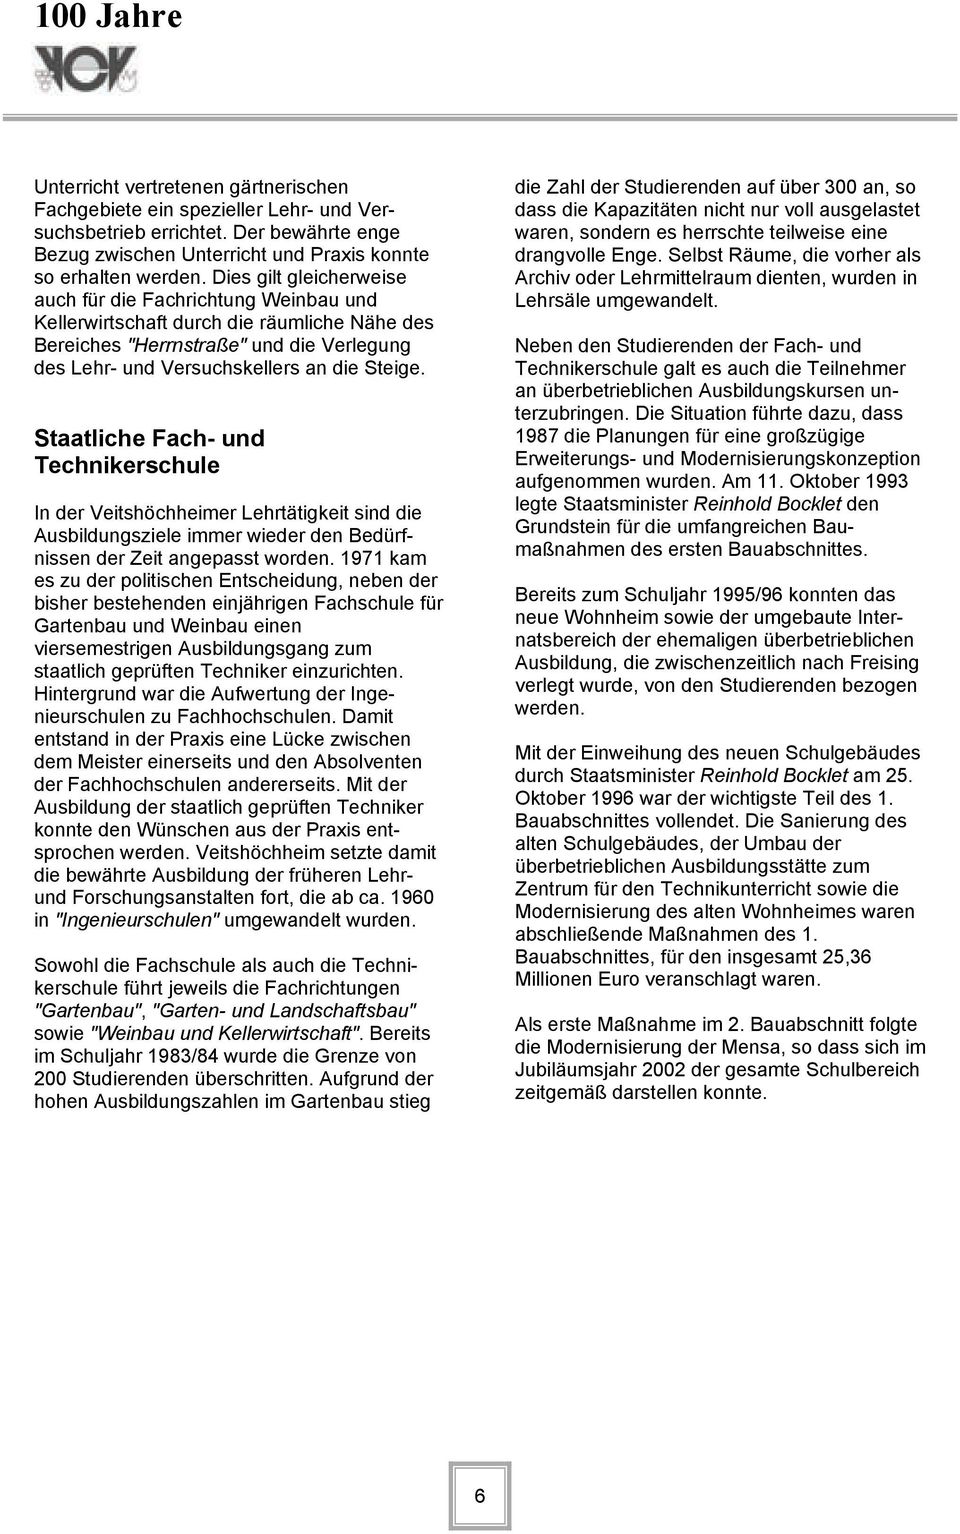 Staatliche Fach- und Technikerschule In der Veitshöchheimer Lehrtätigkeit sind die Ausbildungsziele immer wieder den Bedürfnissen der Zeit angepasst worden.